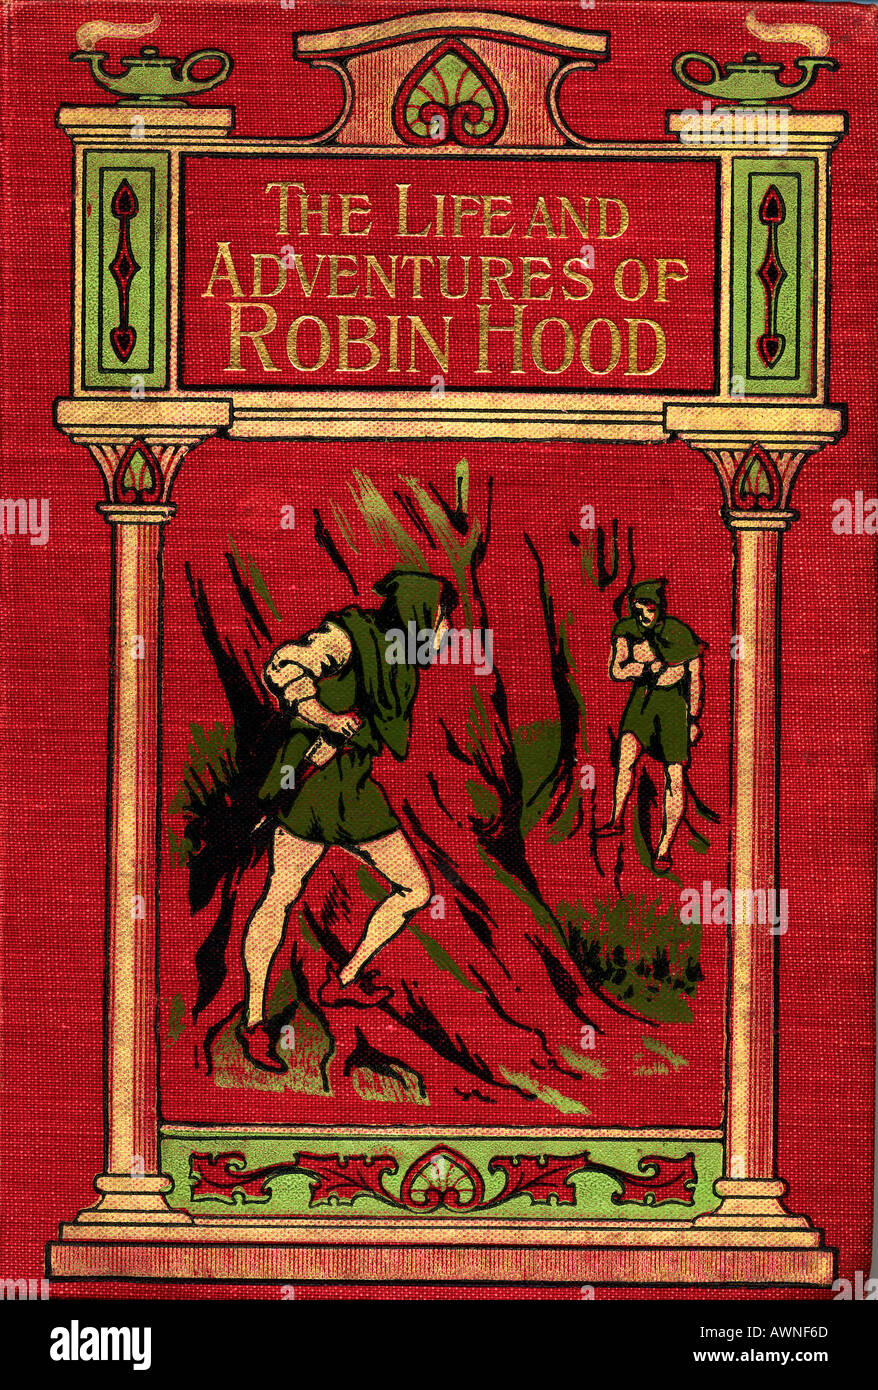 Das Leben und die Abenteuer von Robin Hood. Vordere Abdeckung aus dem Buch mit dem gleichen Titel von John B Marsh, veröffentlicht um 1900. Stockfoto